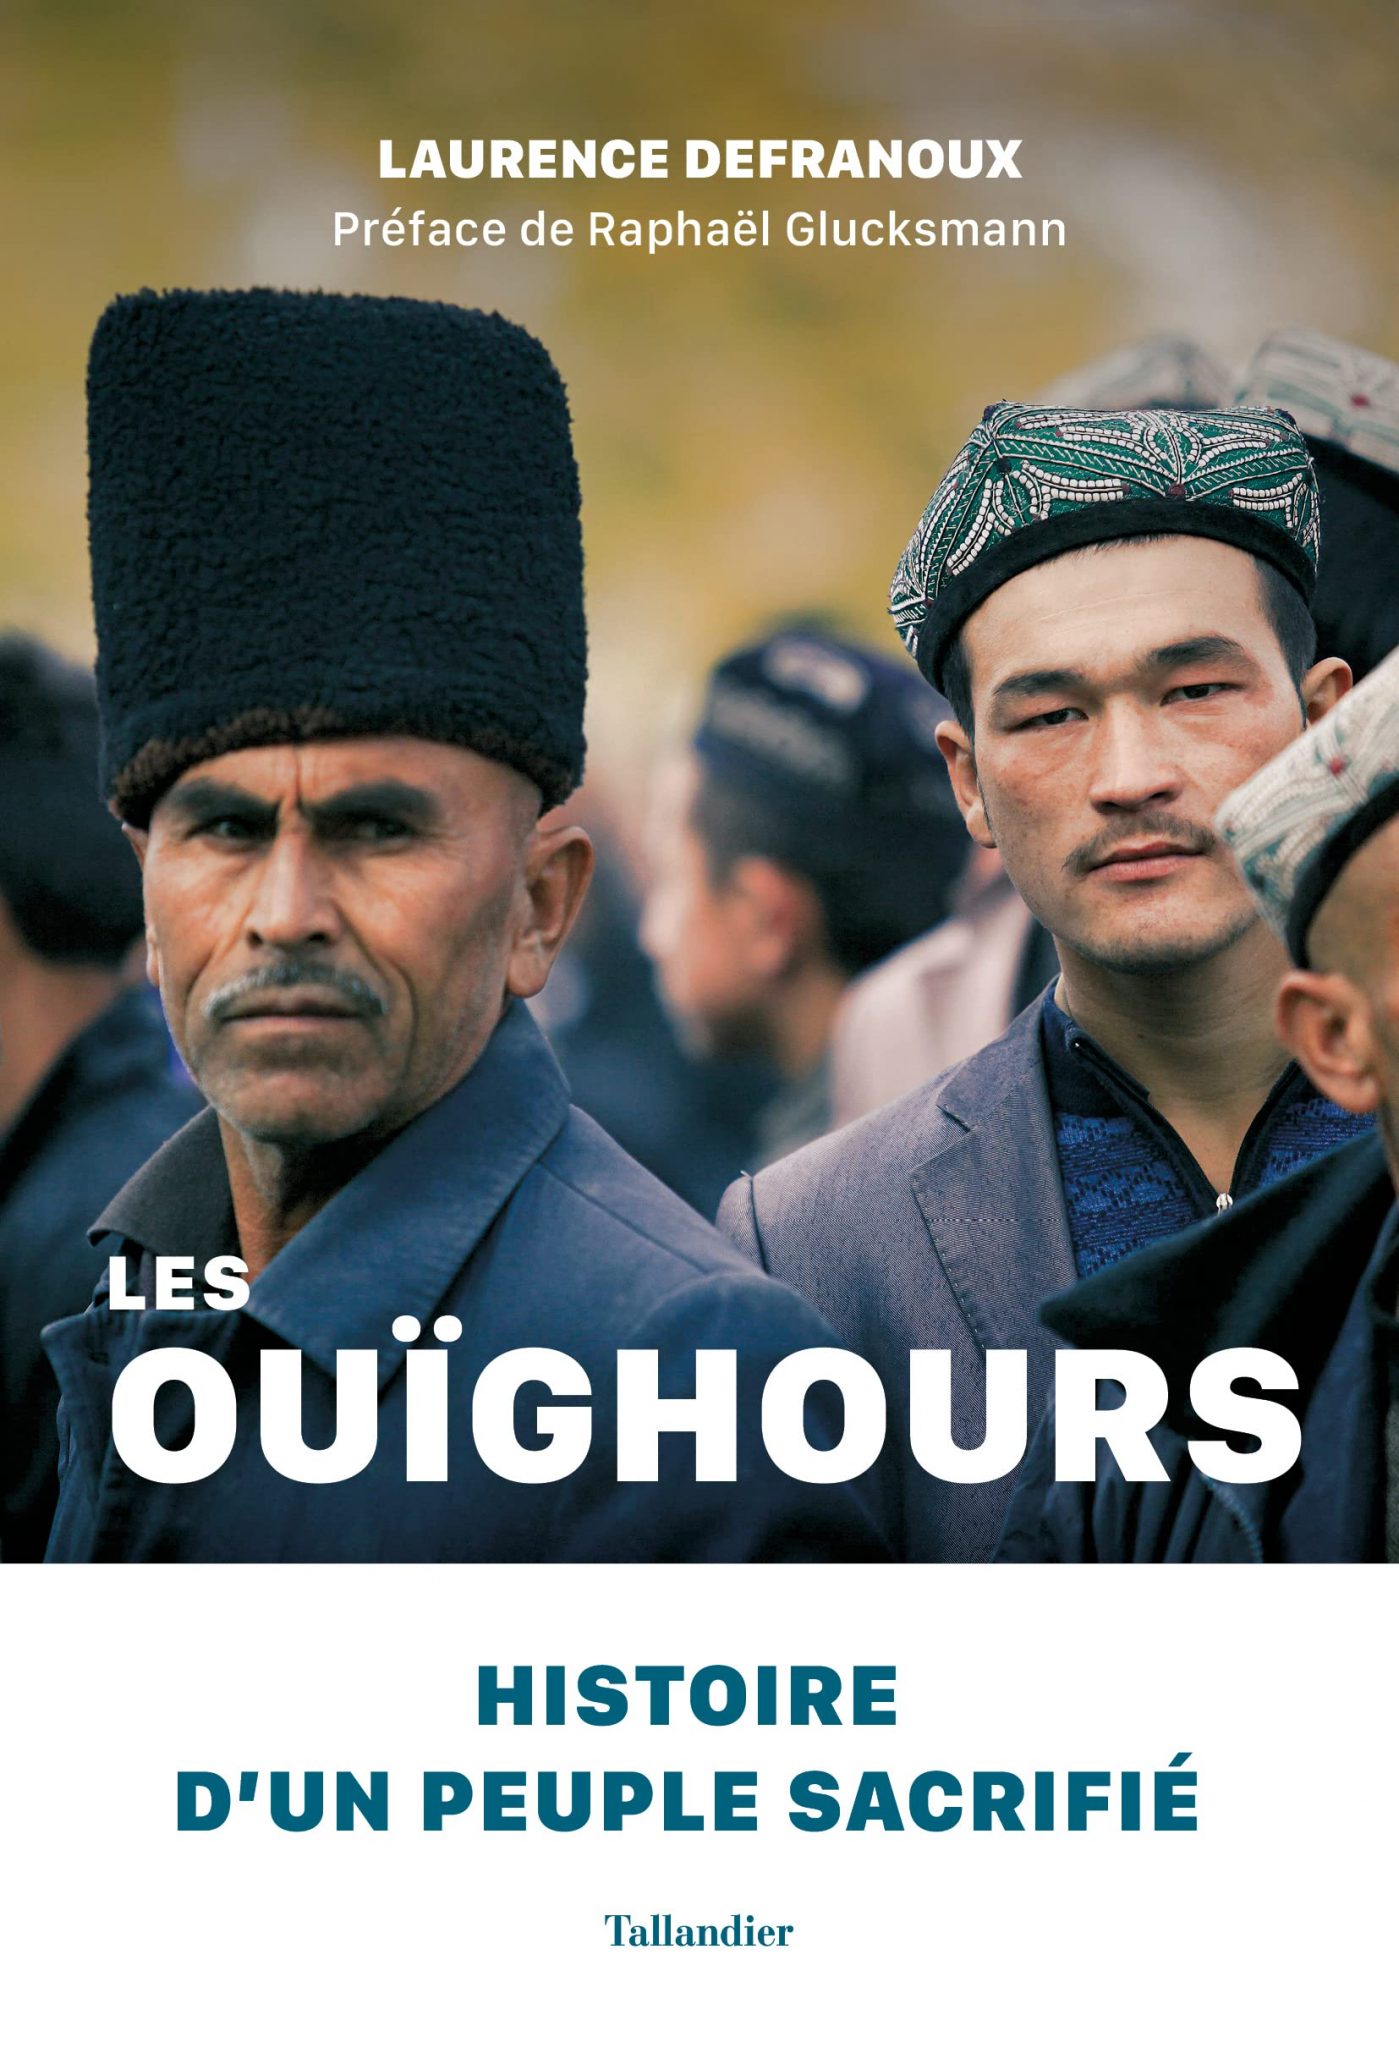 defranoux-ouighours-histoire-peuple-sacrifie-1399x2048